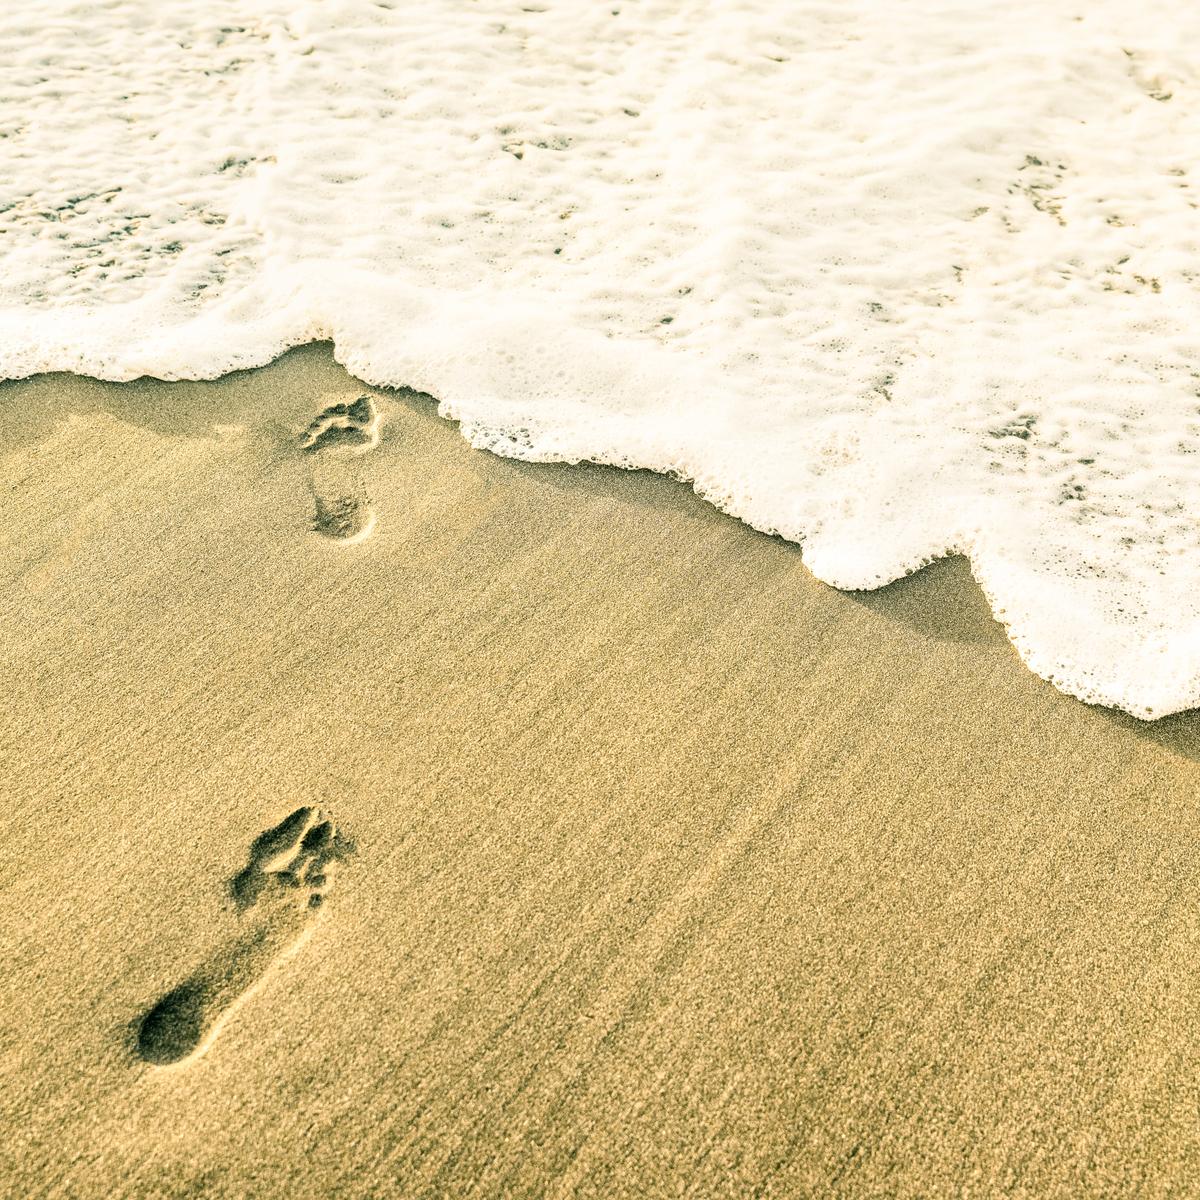 Hüllenlos Im Sand